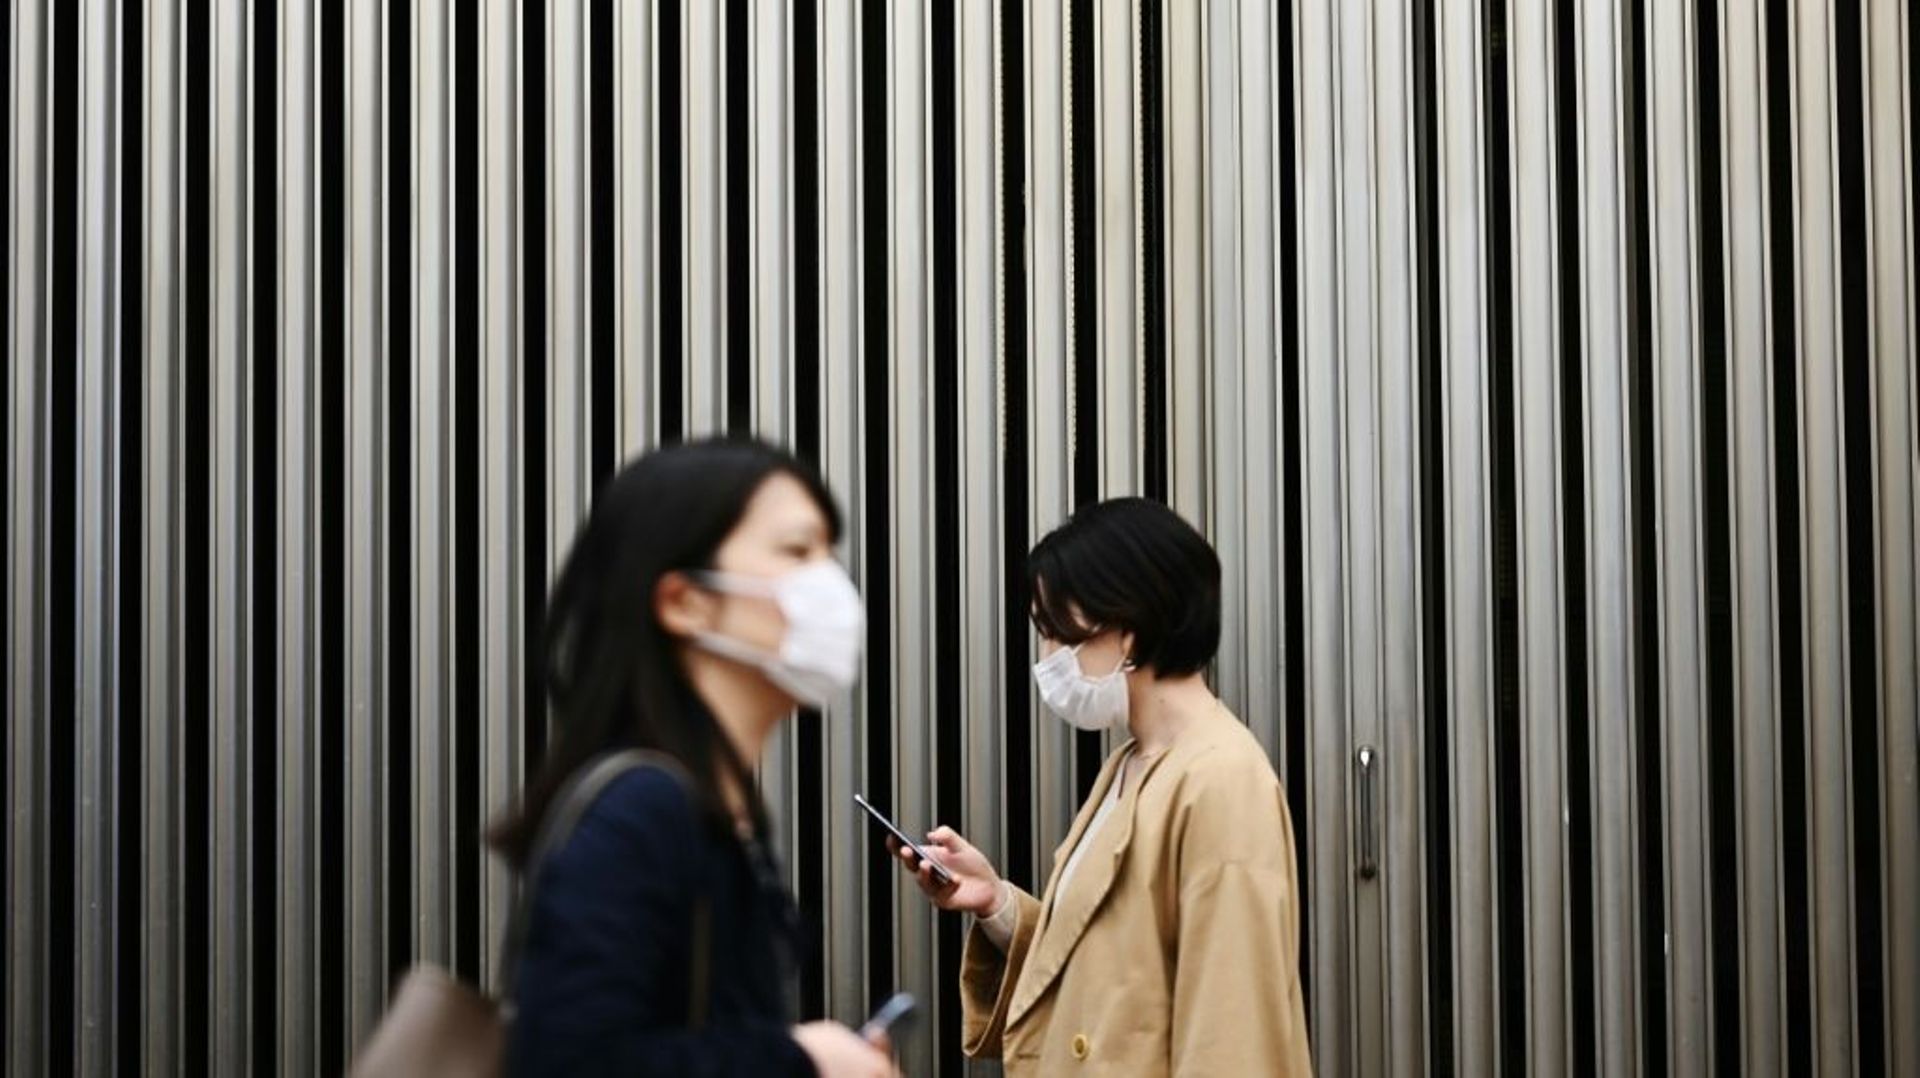 Deux femmes portent un masque de protection pendant l'épidémie de coronavirus, le 18 mars 2020 à Tokyo, au Japon